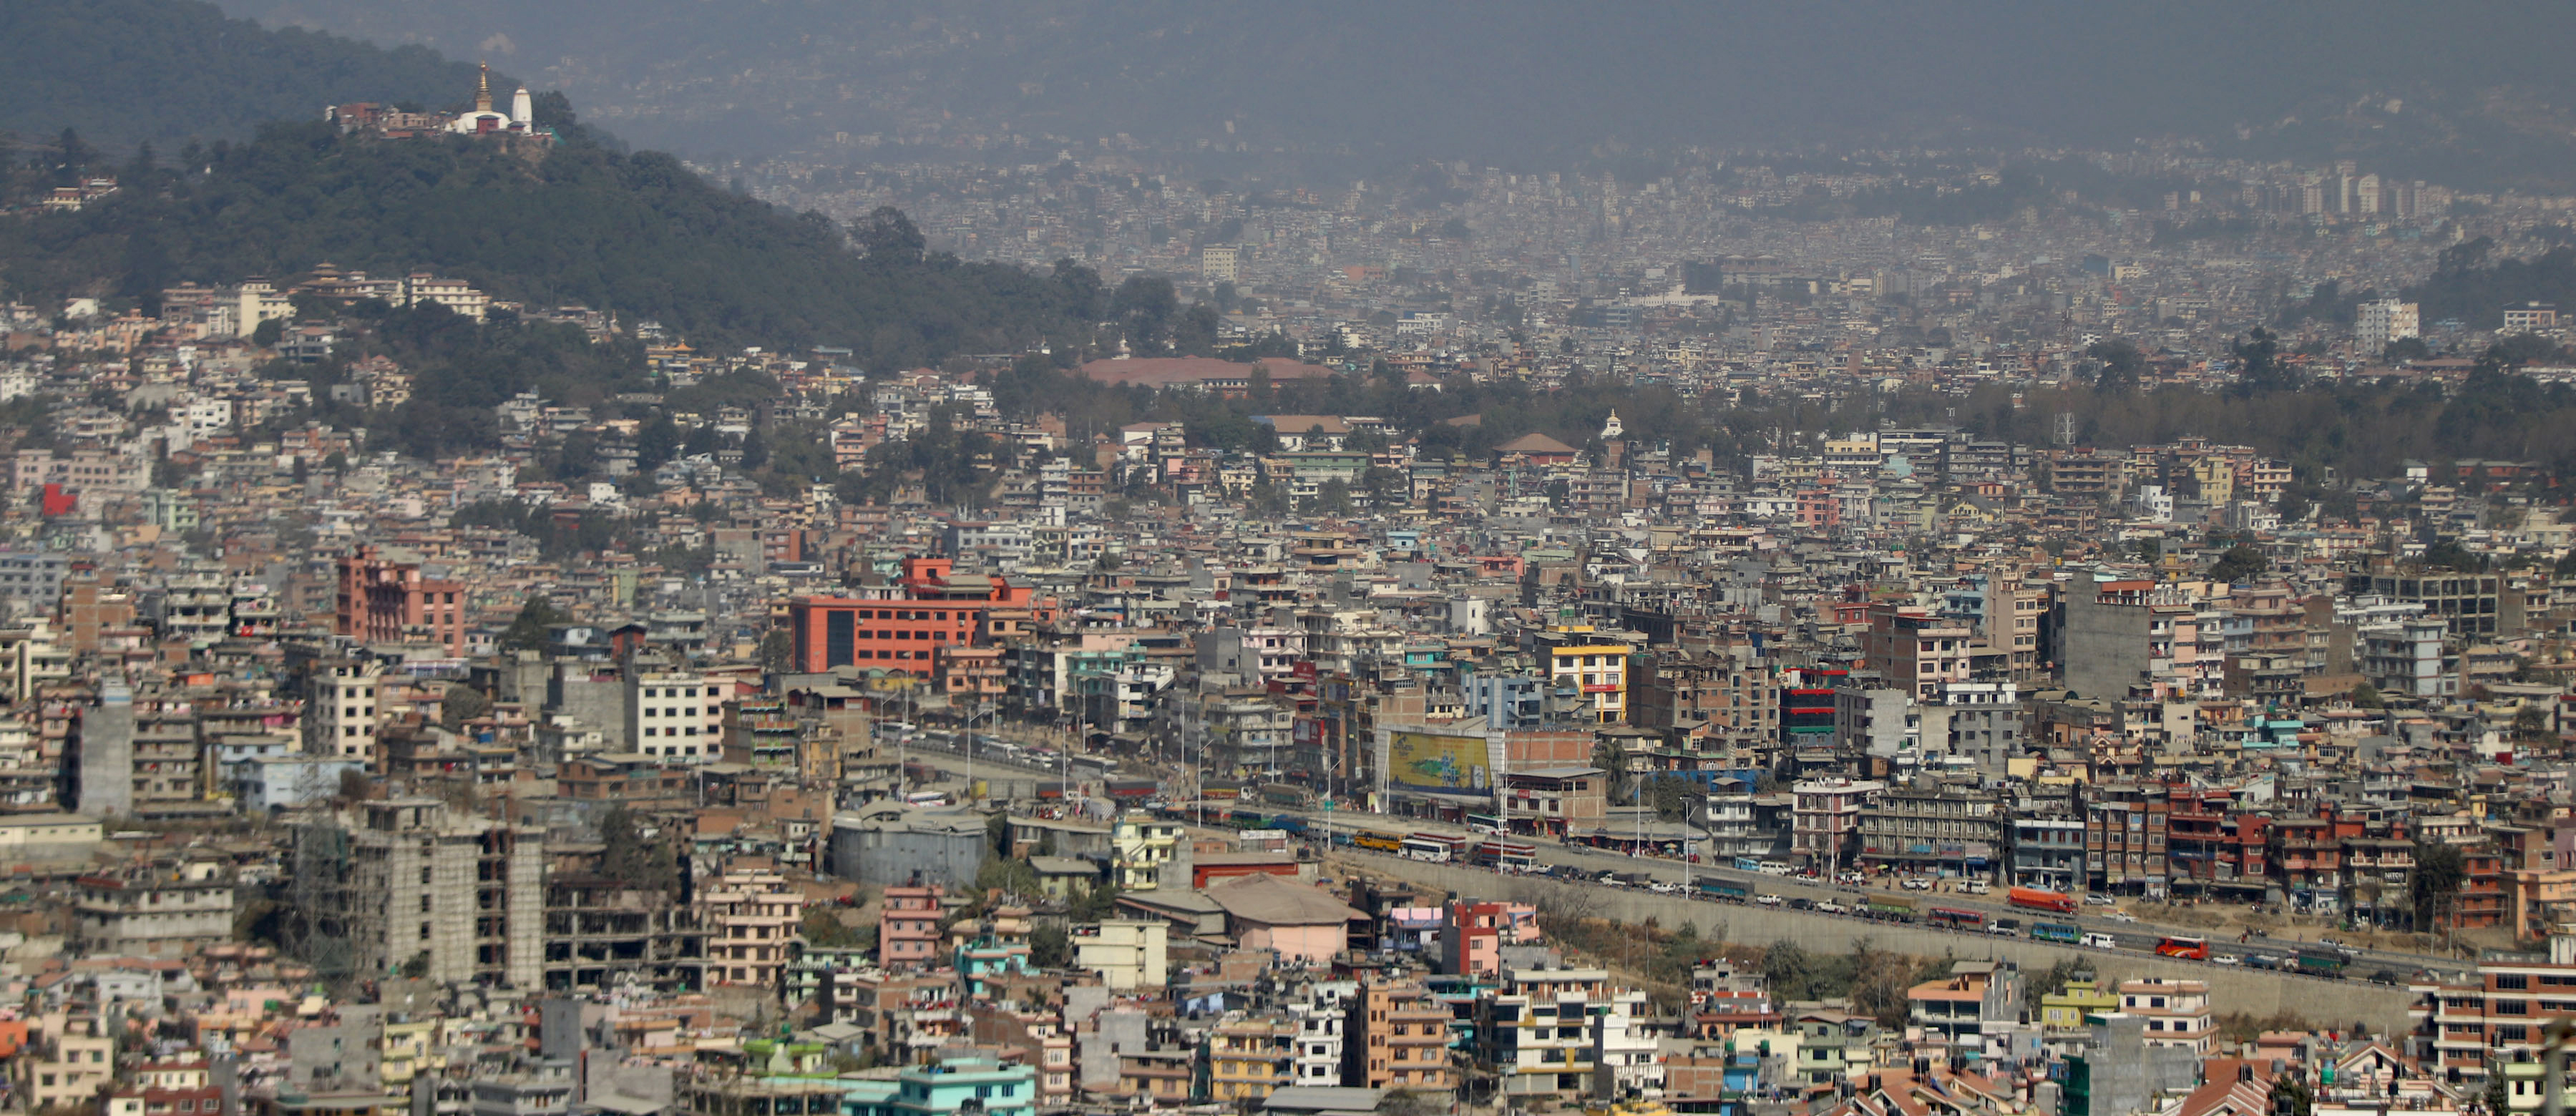 काठमाडौंमा आज फाट्टफुट्ट वर्षा, देशभर आंशिकदेखि सामान्य बदली हुने